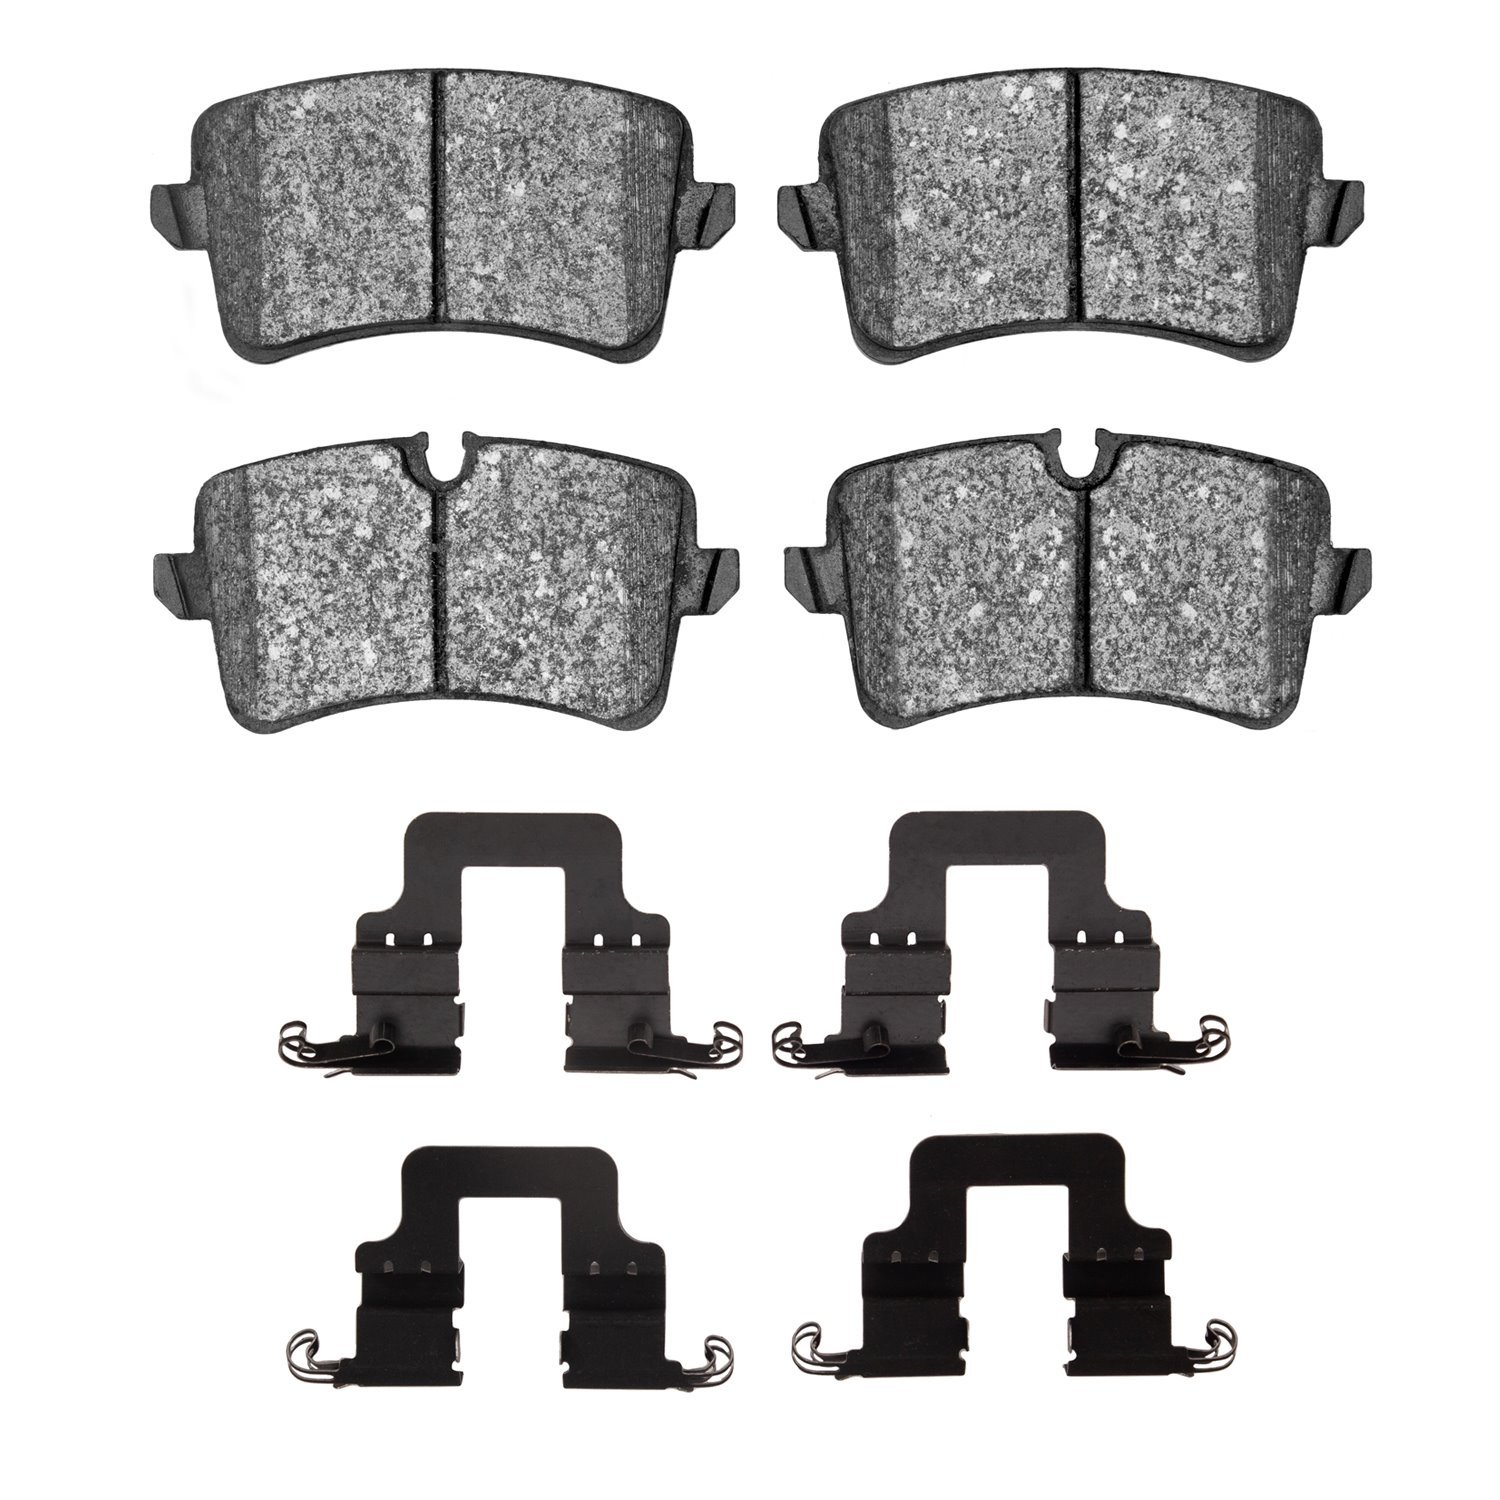 1311-1547-11 3000-Series Semi-Metallic Brake Pads & Hardware Kit, 2012-2013 Audi/Volkswagen, Position: Rear